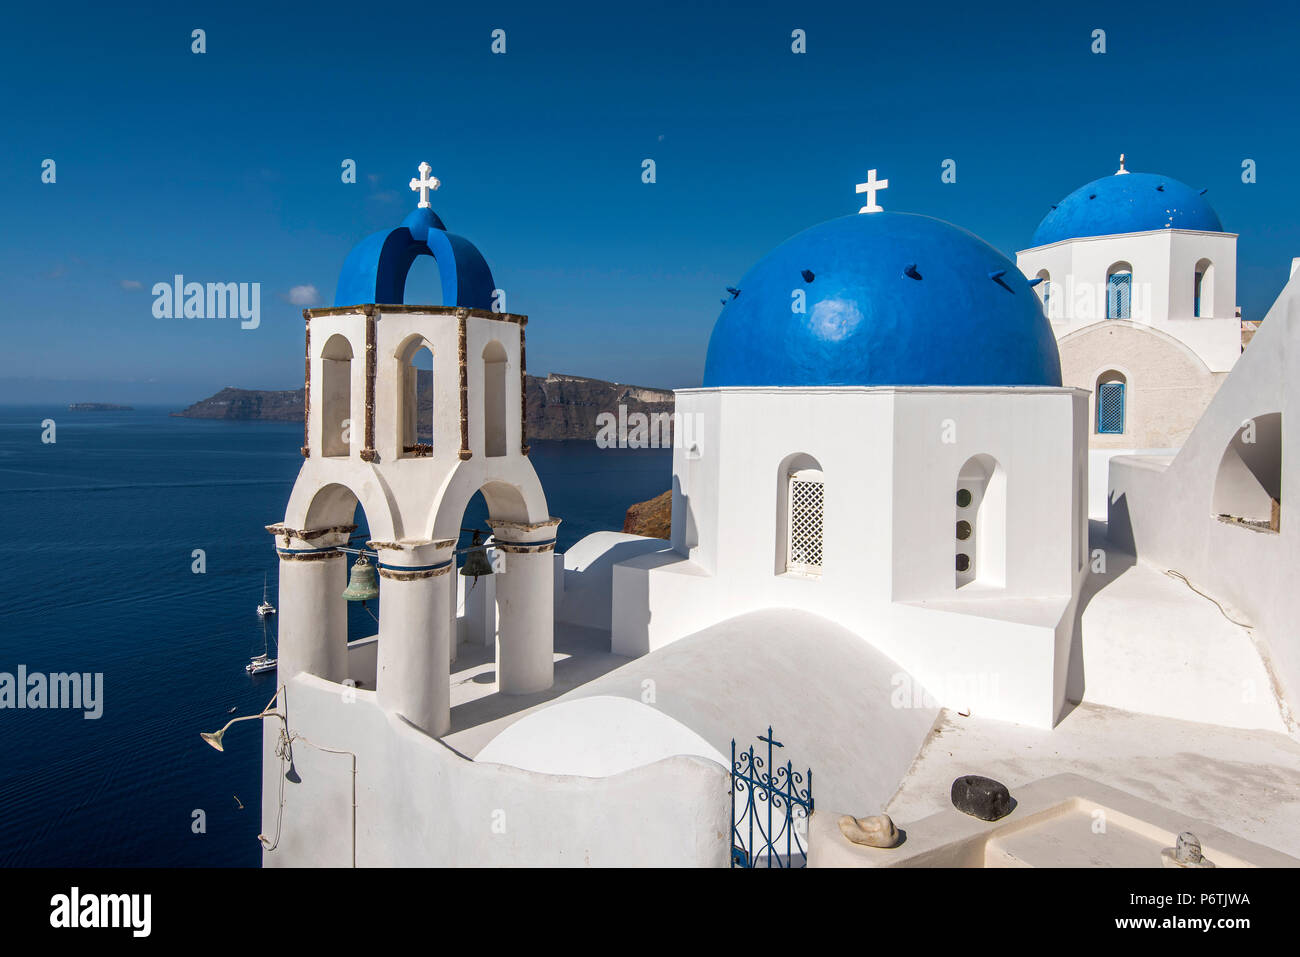 Griechisch-orthodoxe Kirche mit blauen Kuppeln in Oia, Santorini, südliche Ägäis, Griechenland Stockfoto